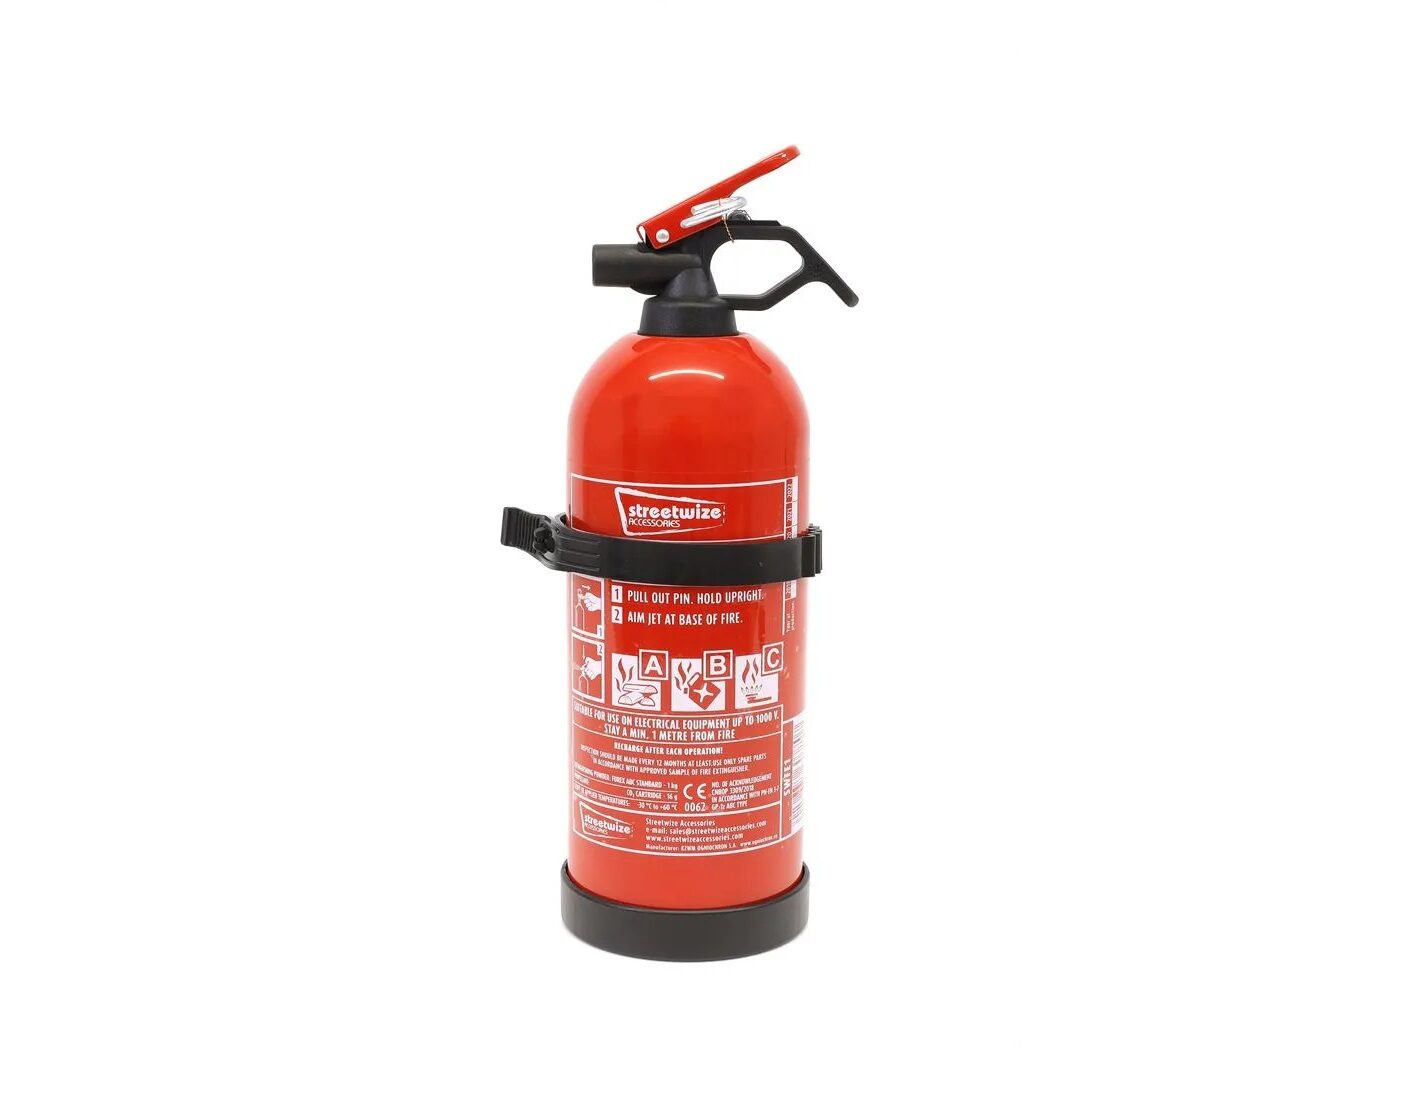 Streetwize 1Kg Fire Extinguisher Dry Powder